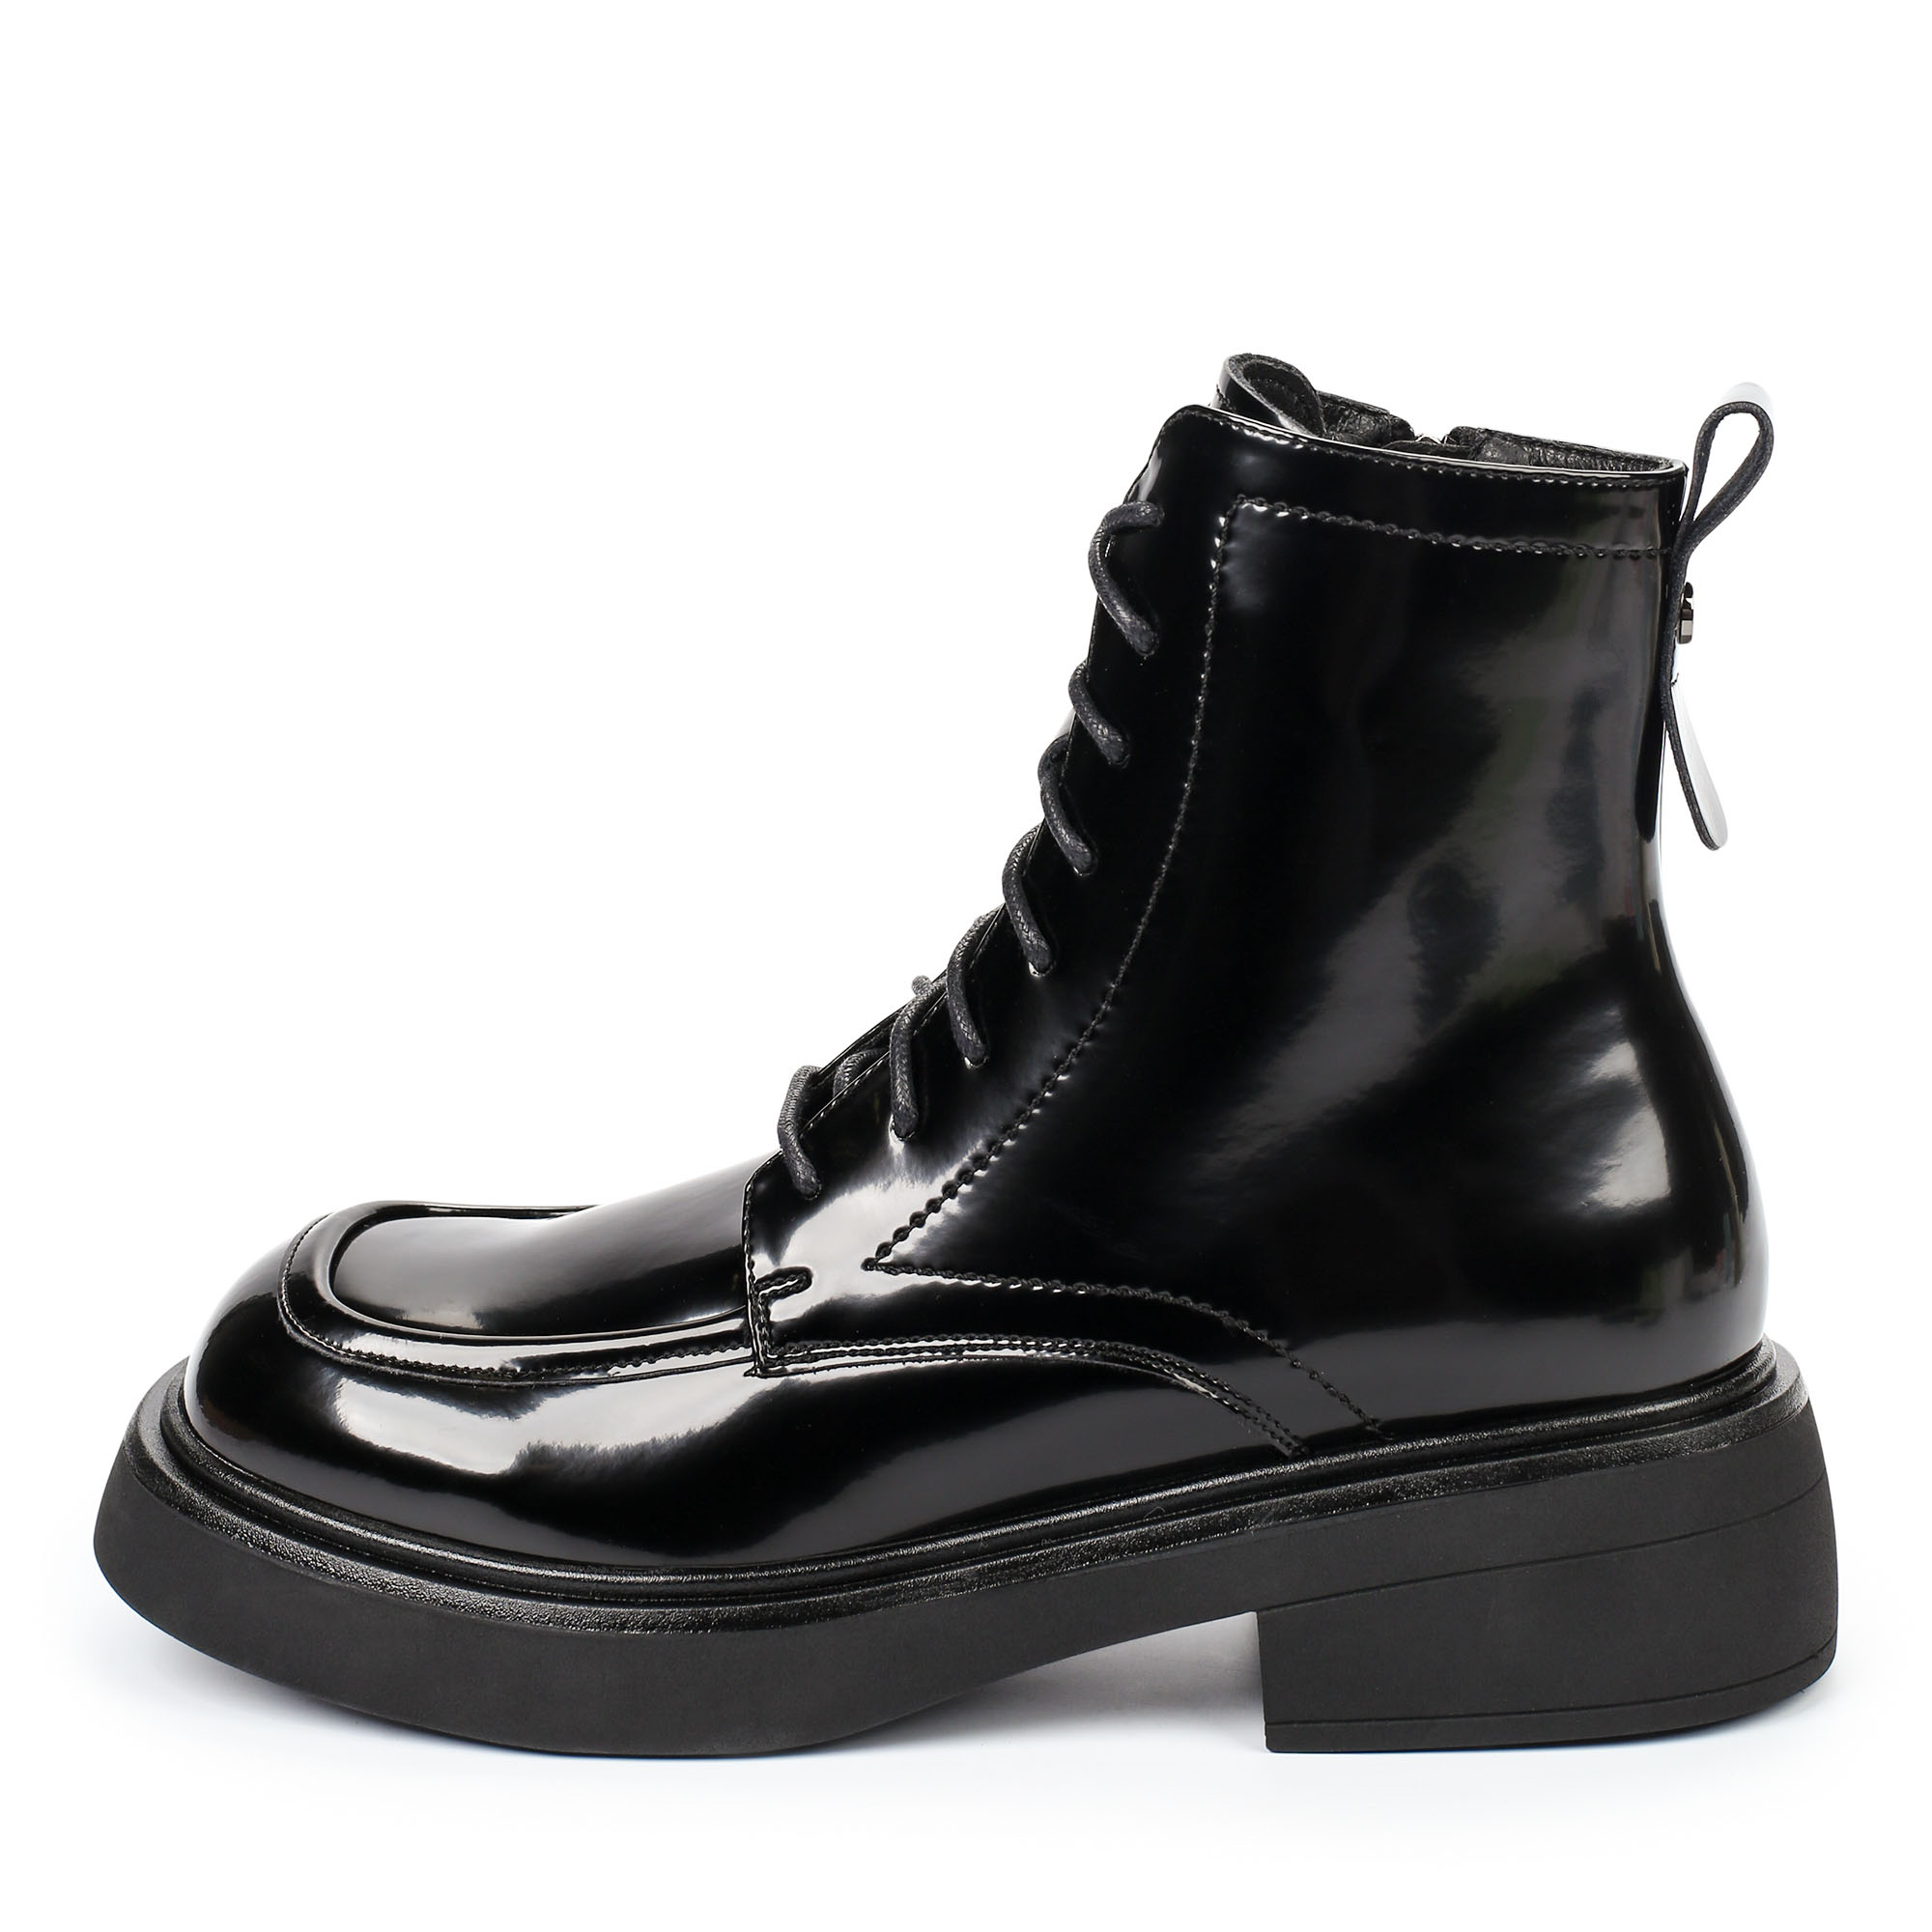 Ботинки Thomas Munz 080-619A-2602, цвет черный, размер 40